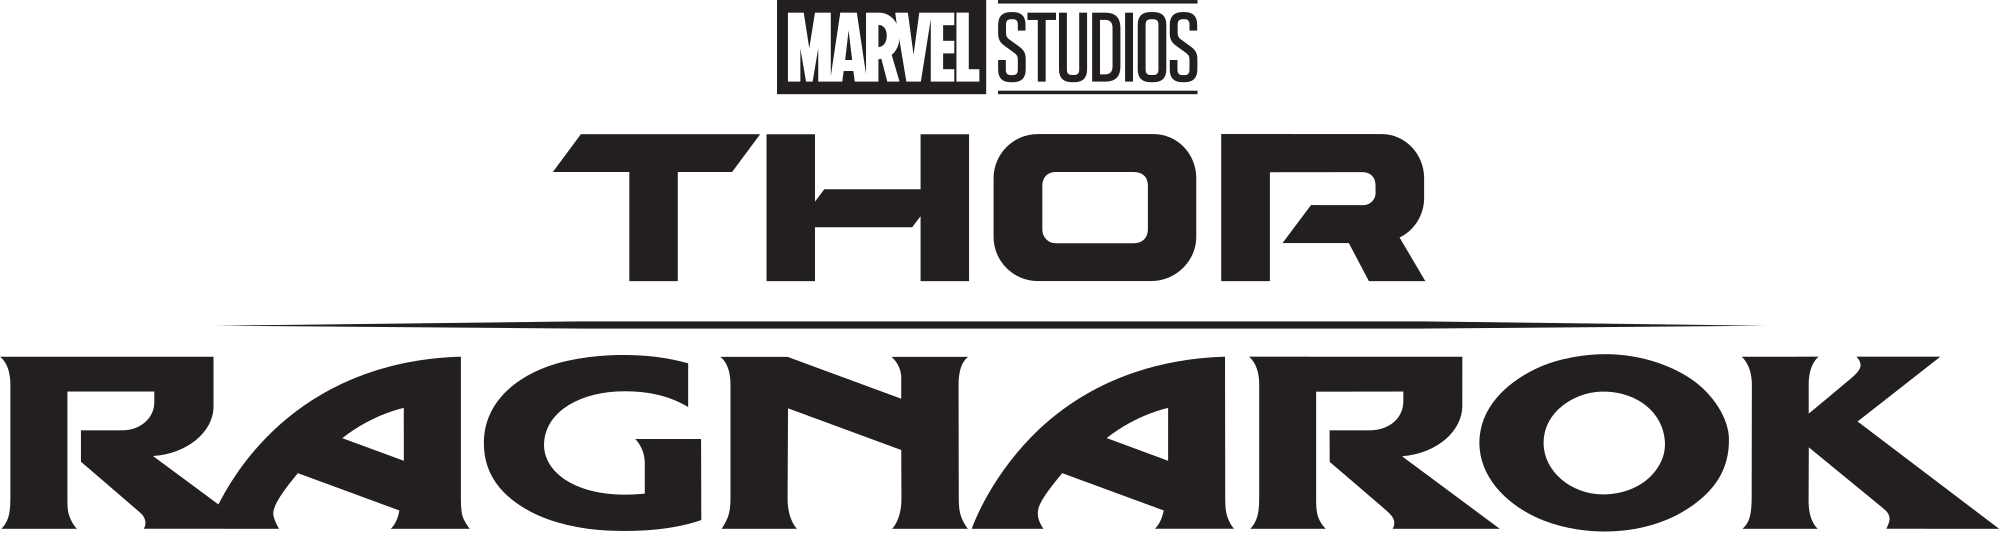 Thor Svg Clip - Thor Ragnarok Logo Png (2000x533), Png Download